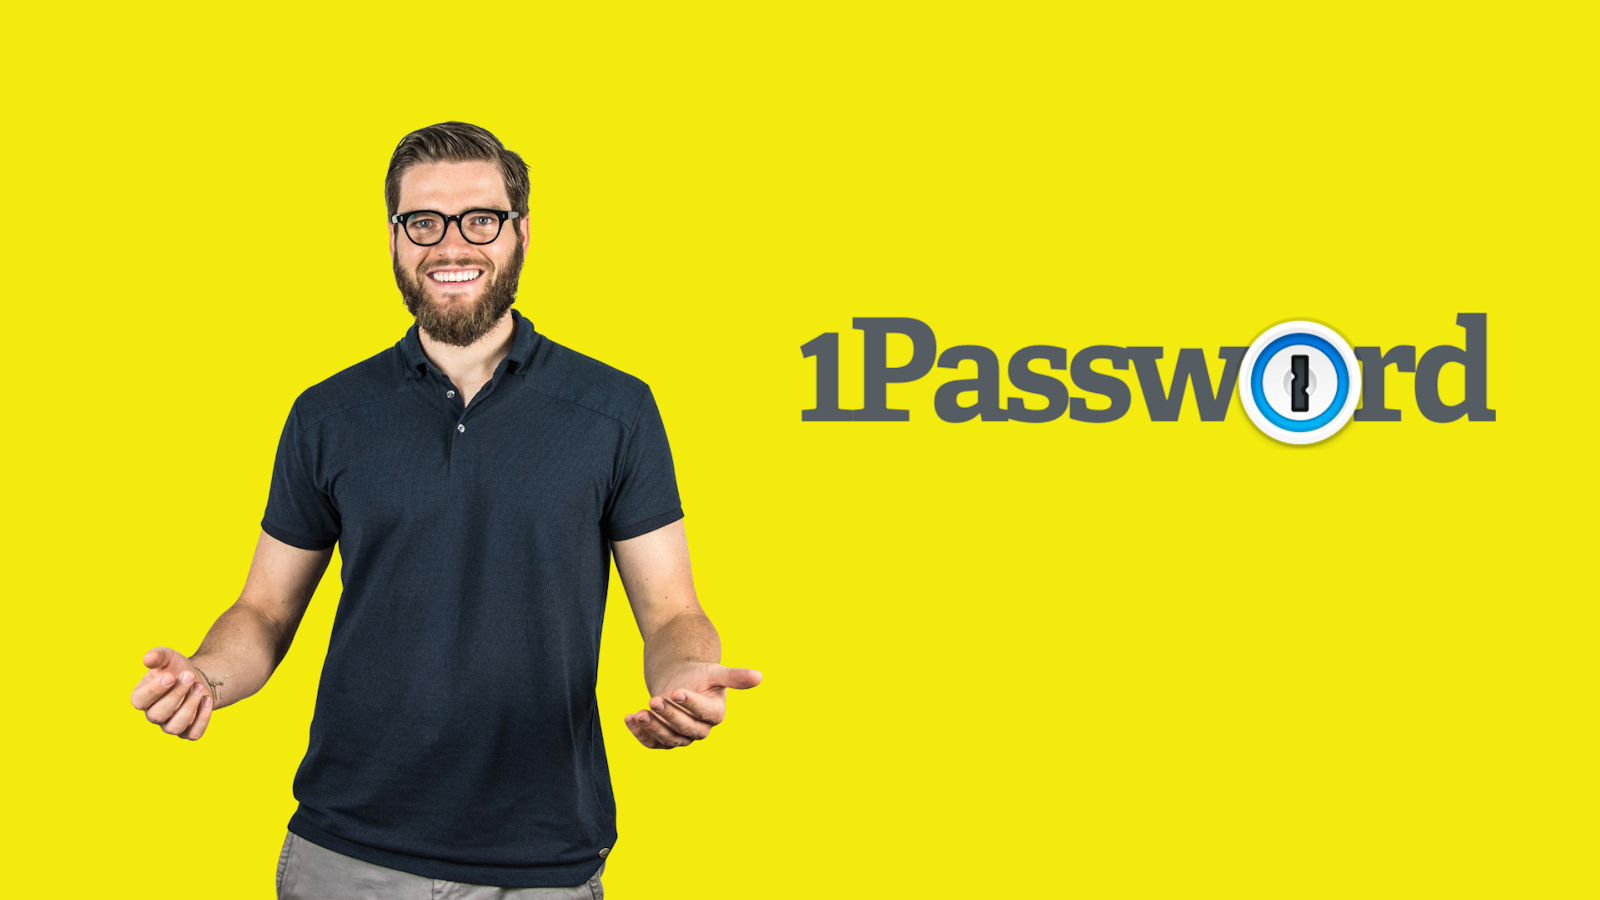 1Password - Passwortgenerator für mehr Sicherheit